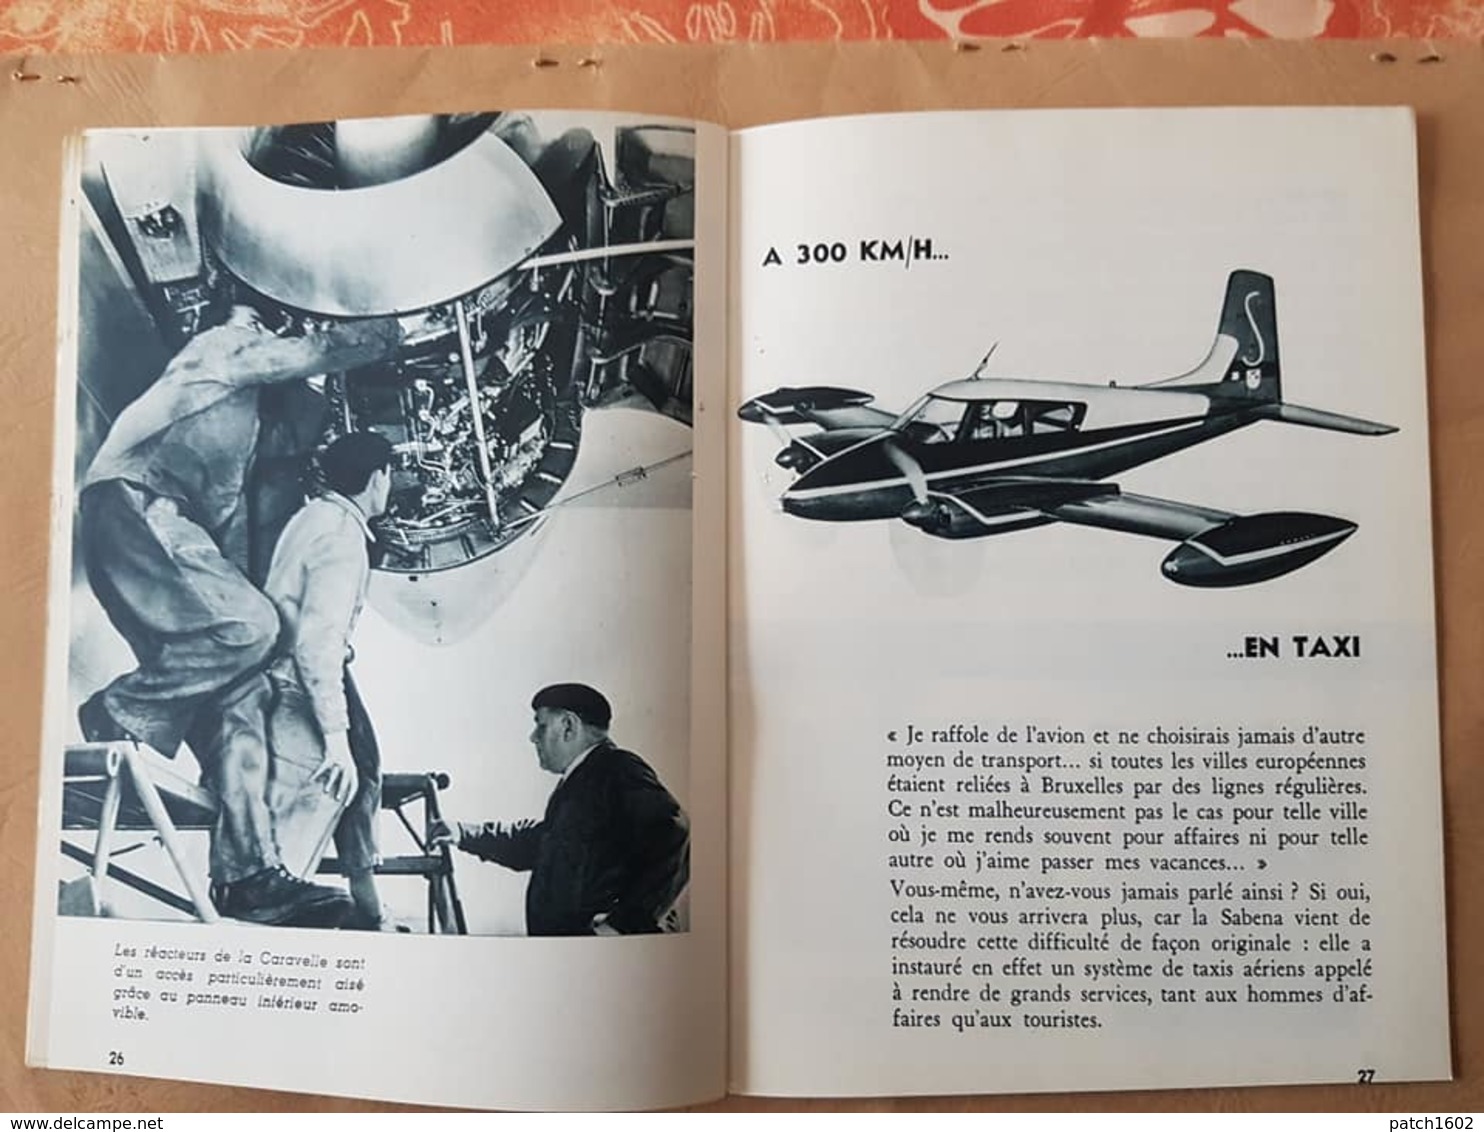 SABENA présentation de la caravelle de la SABENA   MAGAZINE JANVIER 1961